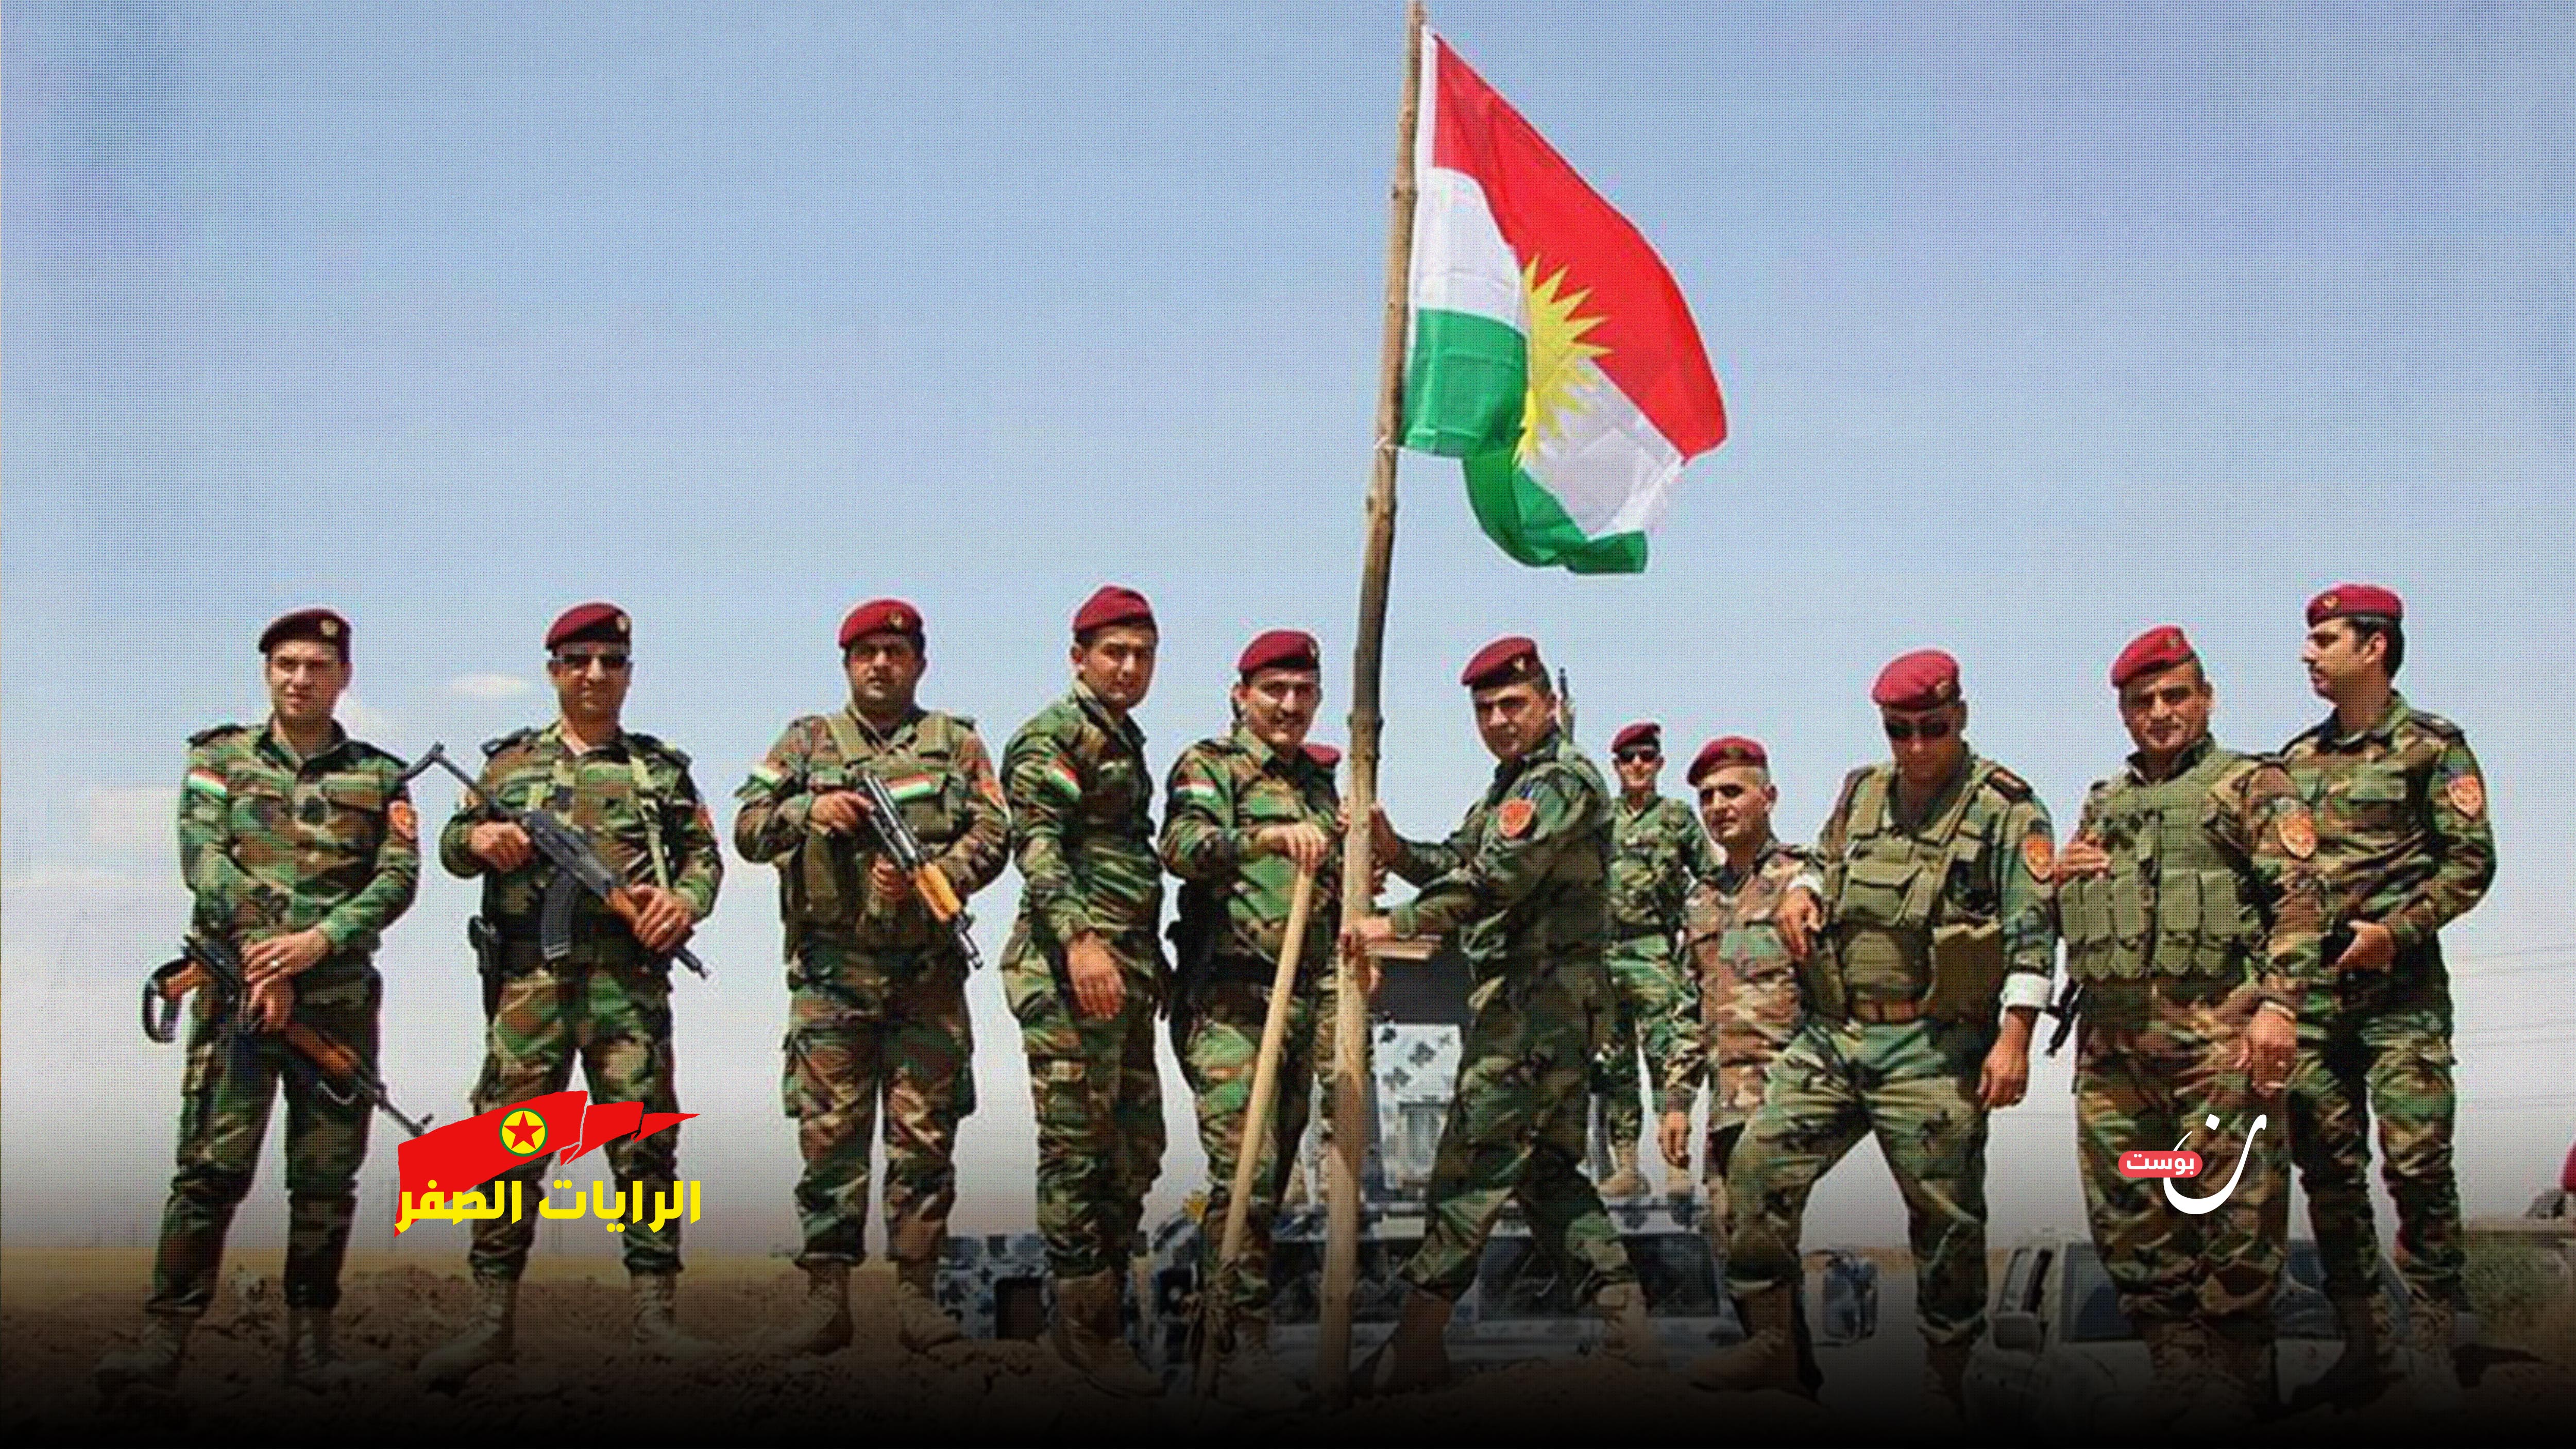 تاريخ الصراع الكردي العراقي مع حزب العمال الكردستاني